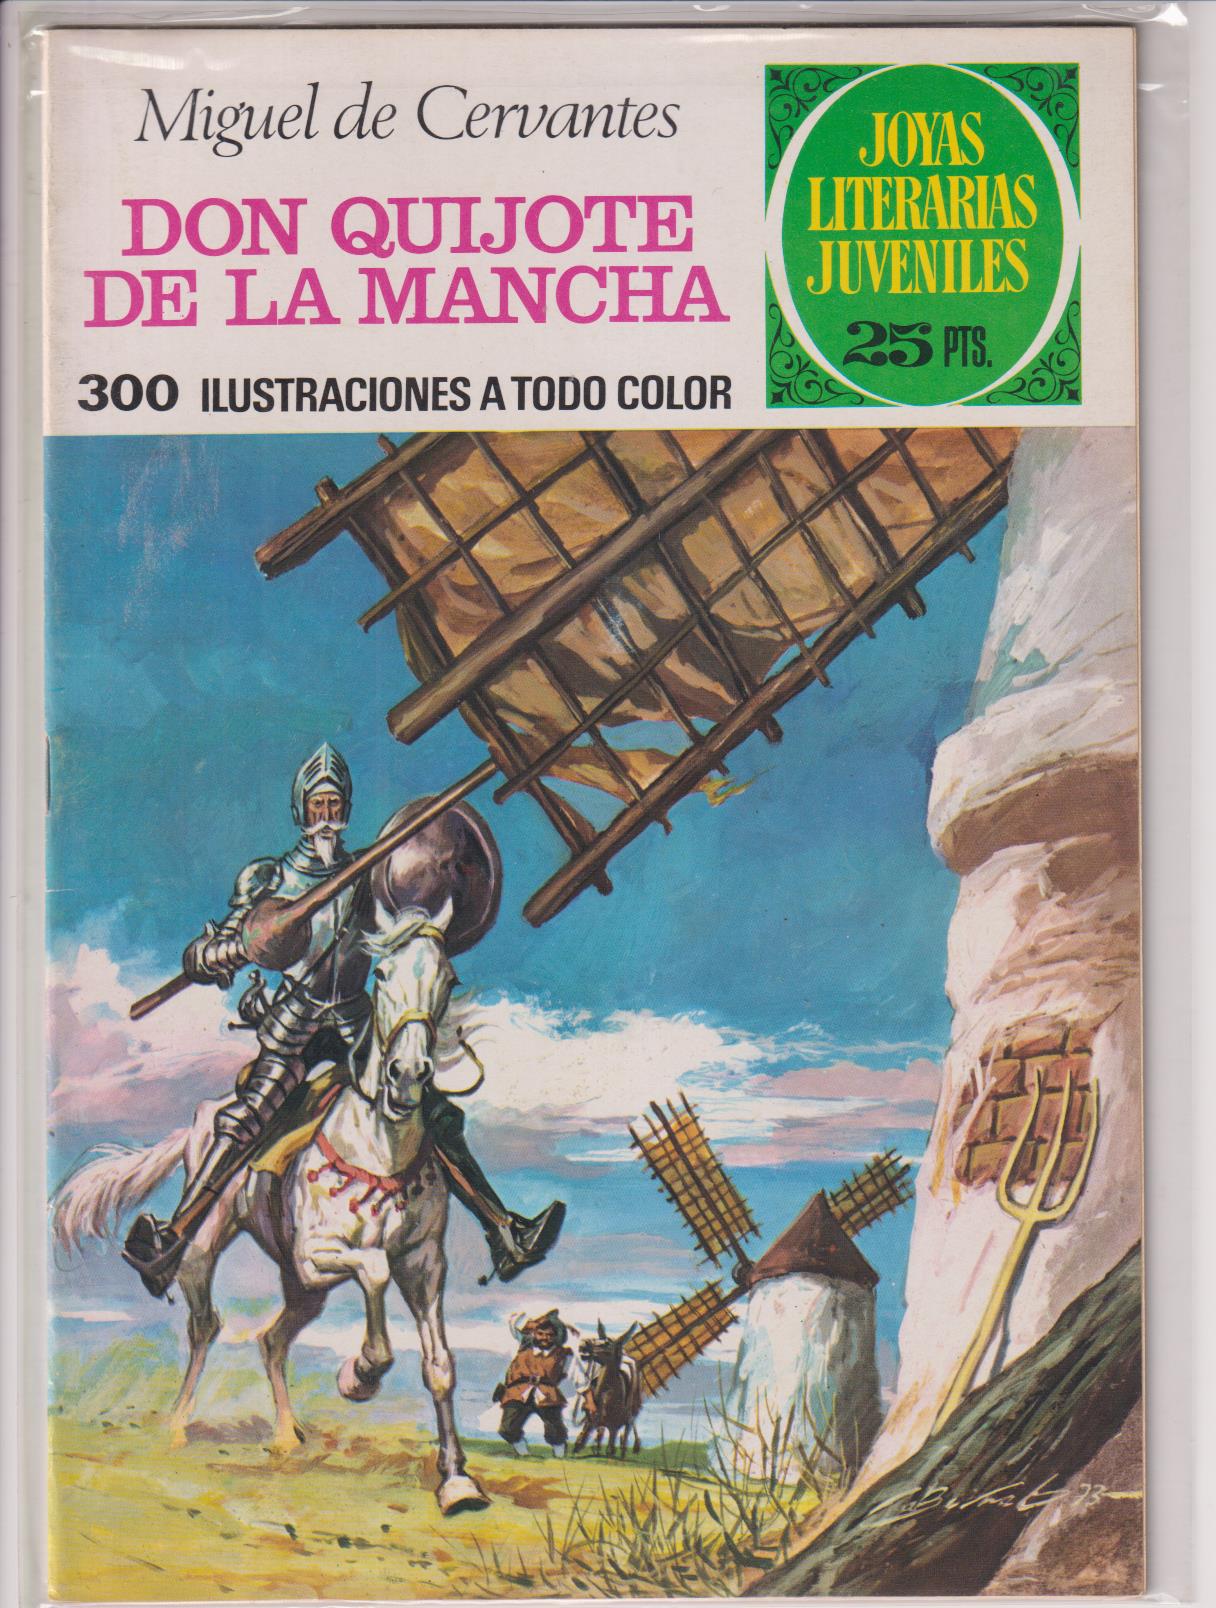 Joyas Literarias nº 98. Don Quijote de la Mancha. 2ª Edición Bruguera 1977